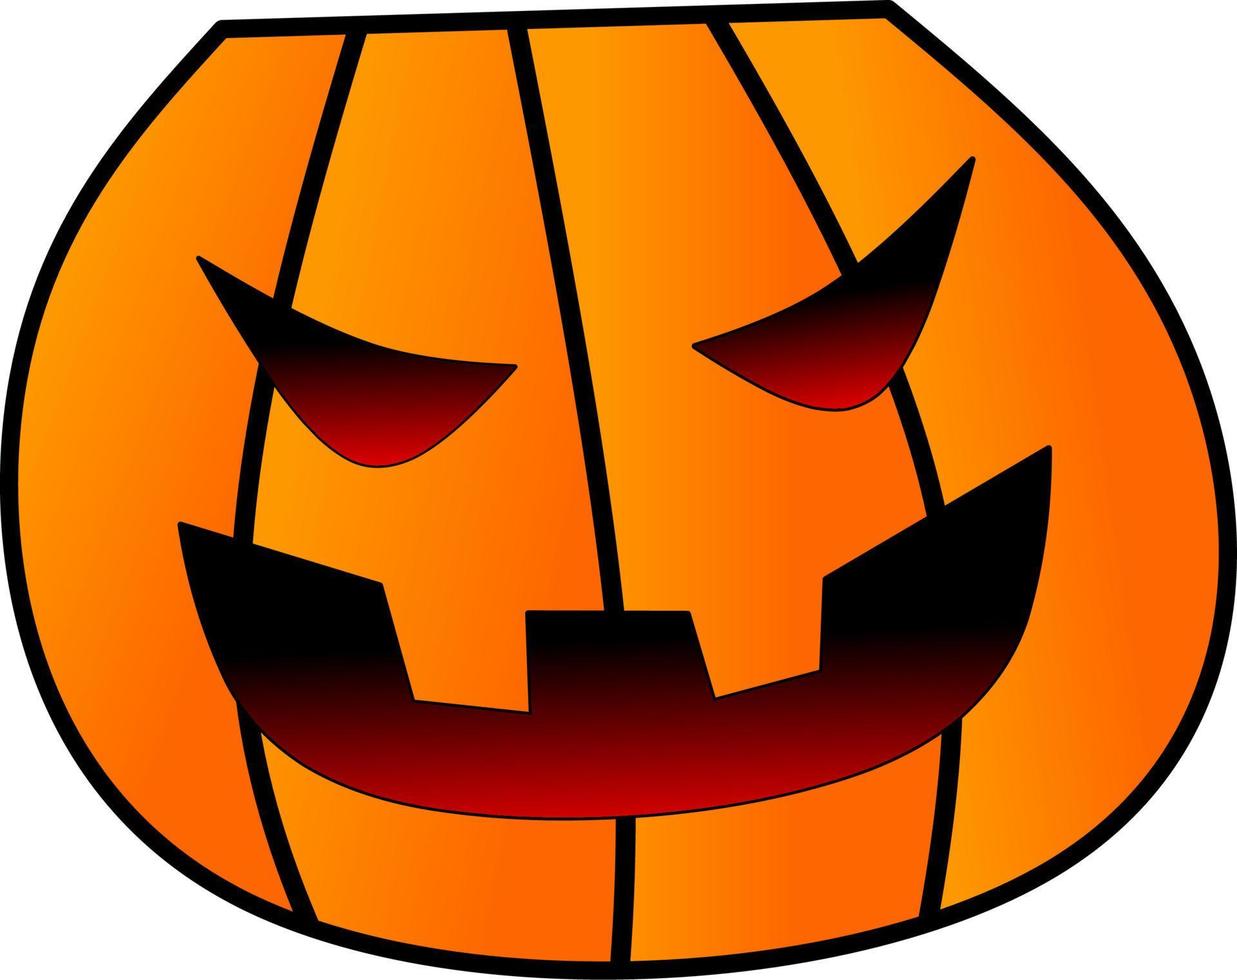 pompoen halloween voor logo, icoon, symbool, halloween, ontwerp of truc of traktatie vector